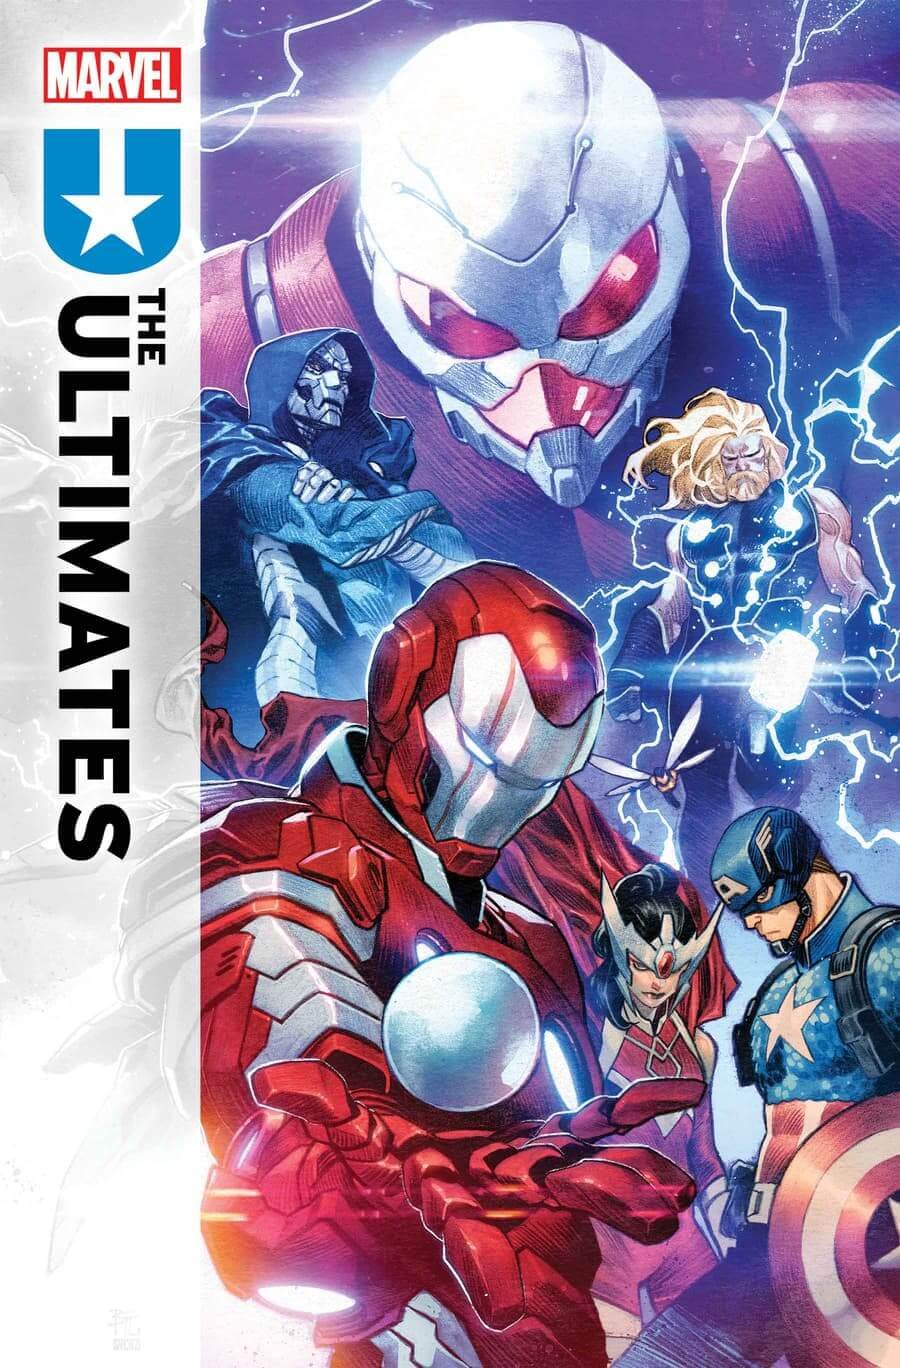 Couverture de Ultimates 1 par Dike Ruan, où l'on voit également les nouveaux personnages Giant-Man et Wasp.